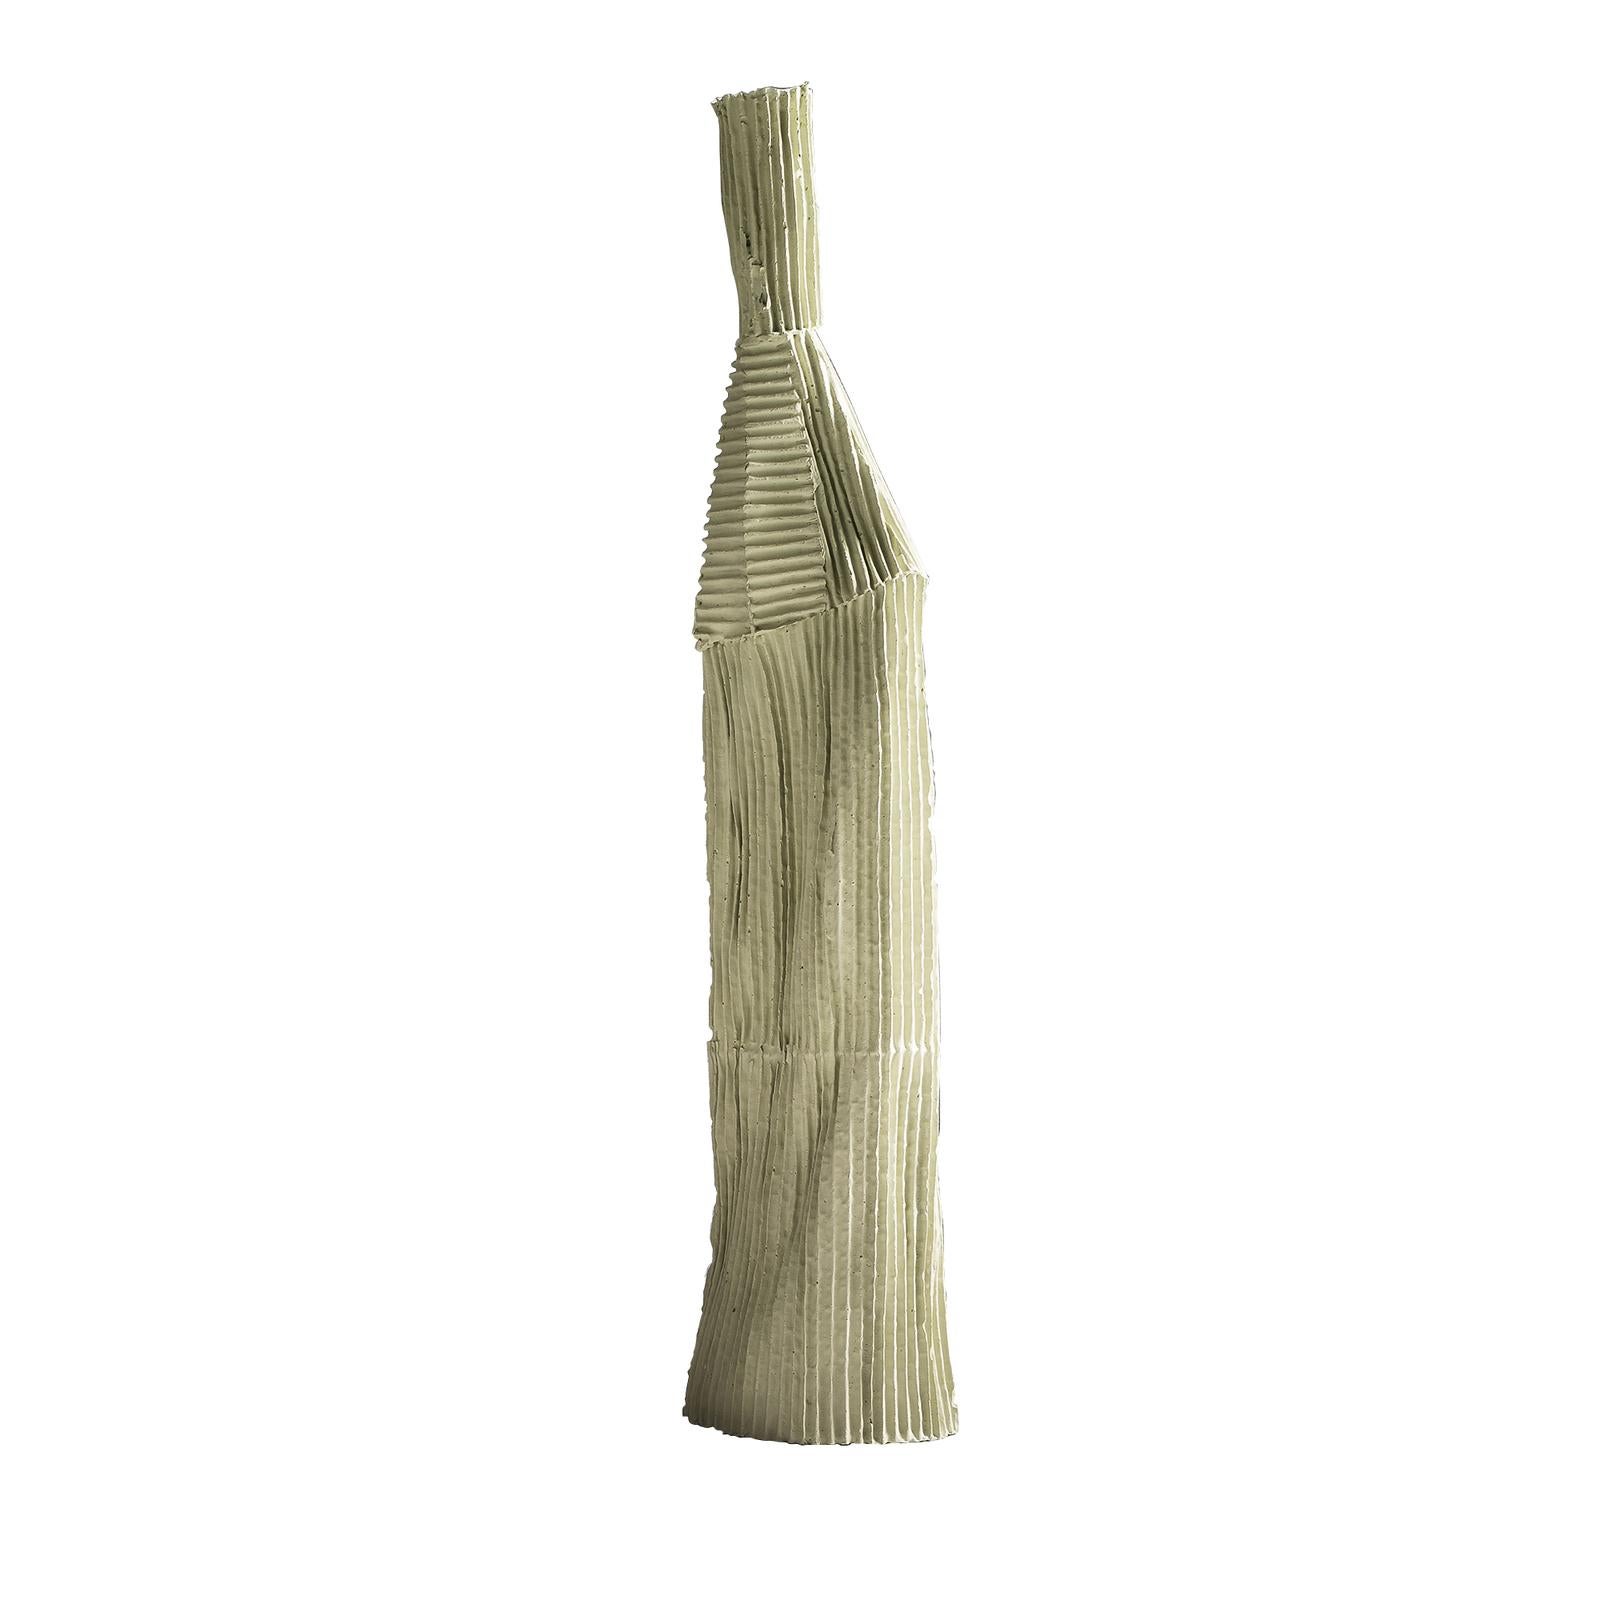 Die Keramikerin Paola Paronetto, die zur Cartocci-Kollektion gehört, interpretiert in dieser handgefertigten Skulptur aus Papierton Alltagsgegenstände mit modernem Flair neu. Dieses innovative Material besteht aus natürlichen Fasern, die der